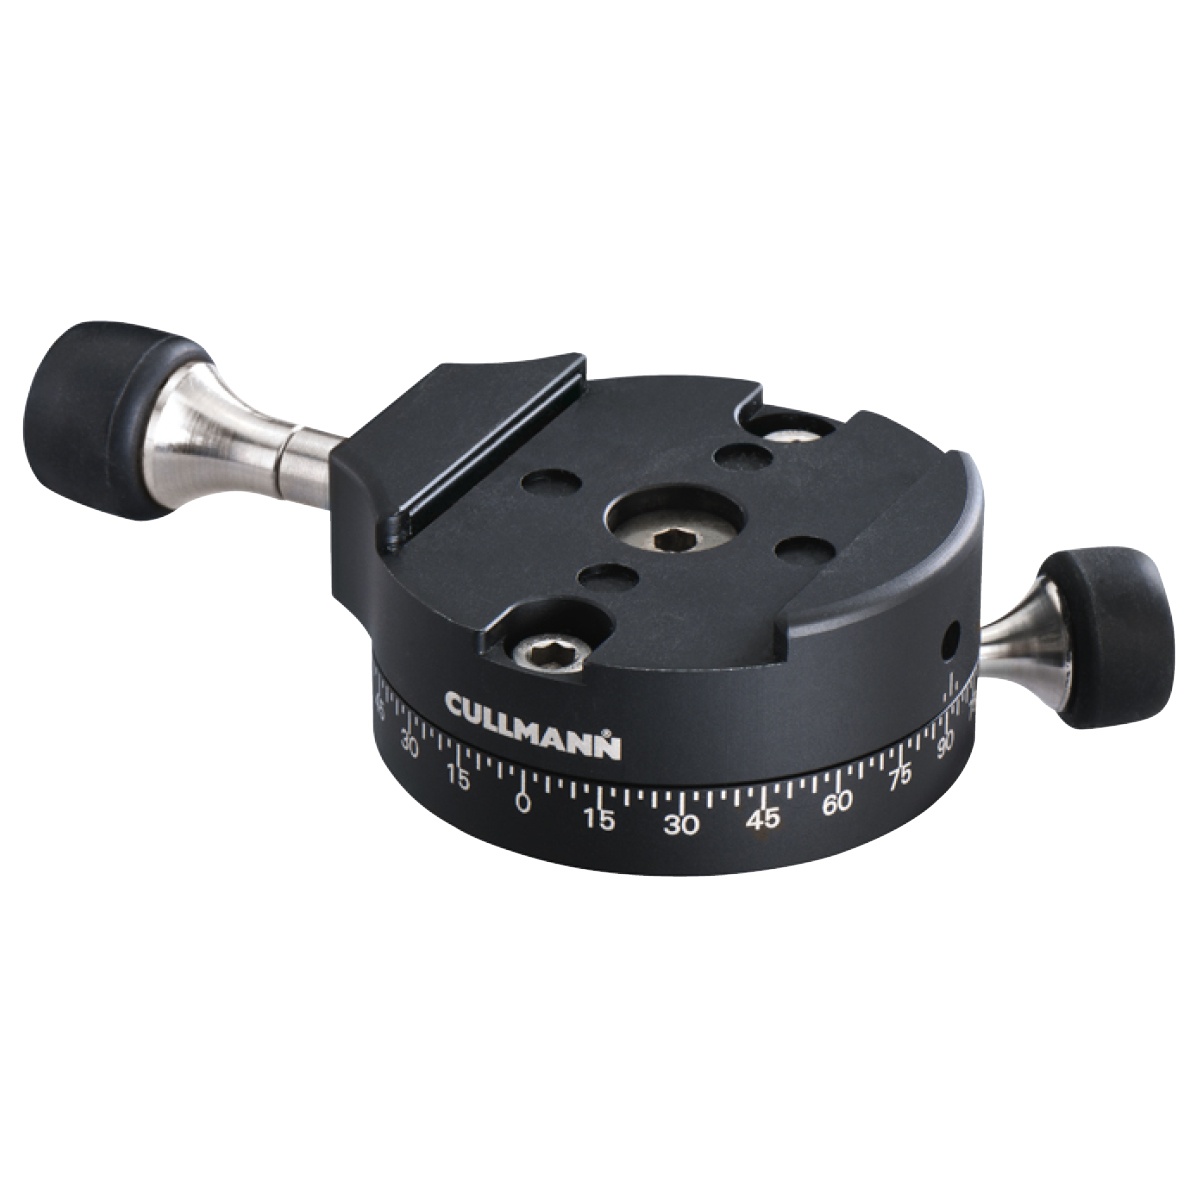 Cullman Concept One OX369 Schnellkupplungs-System